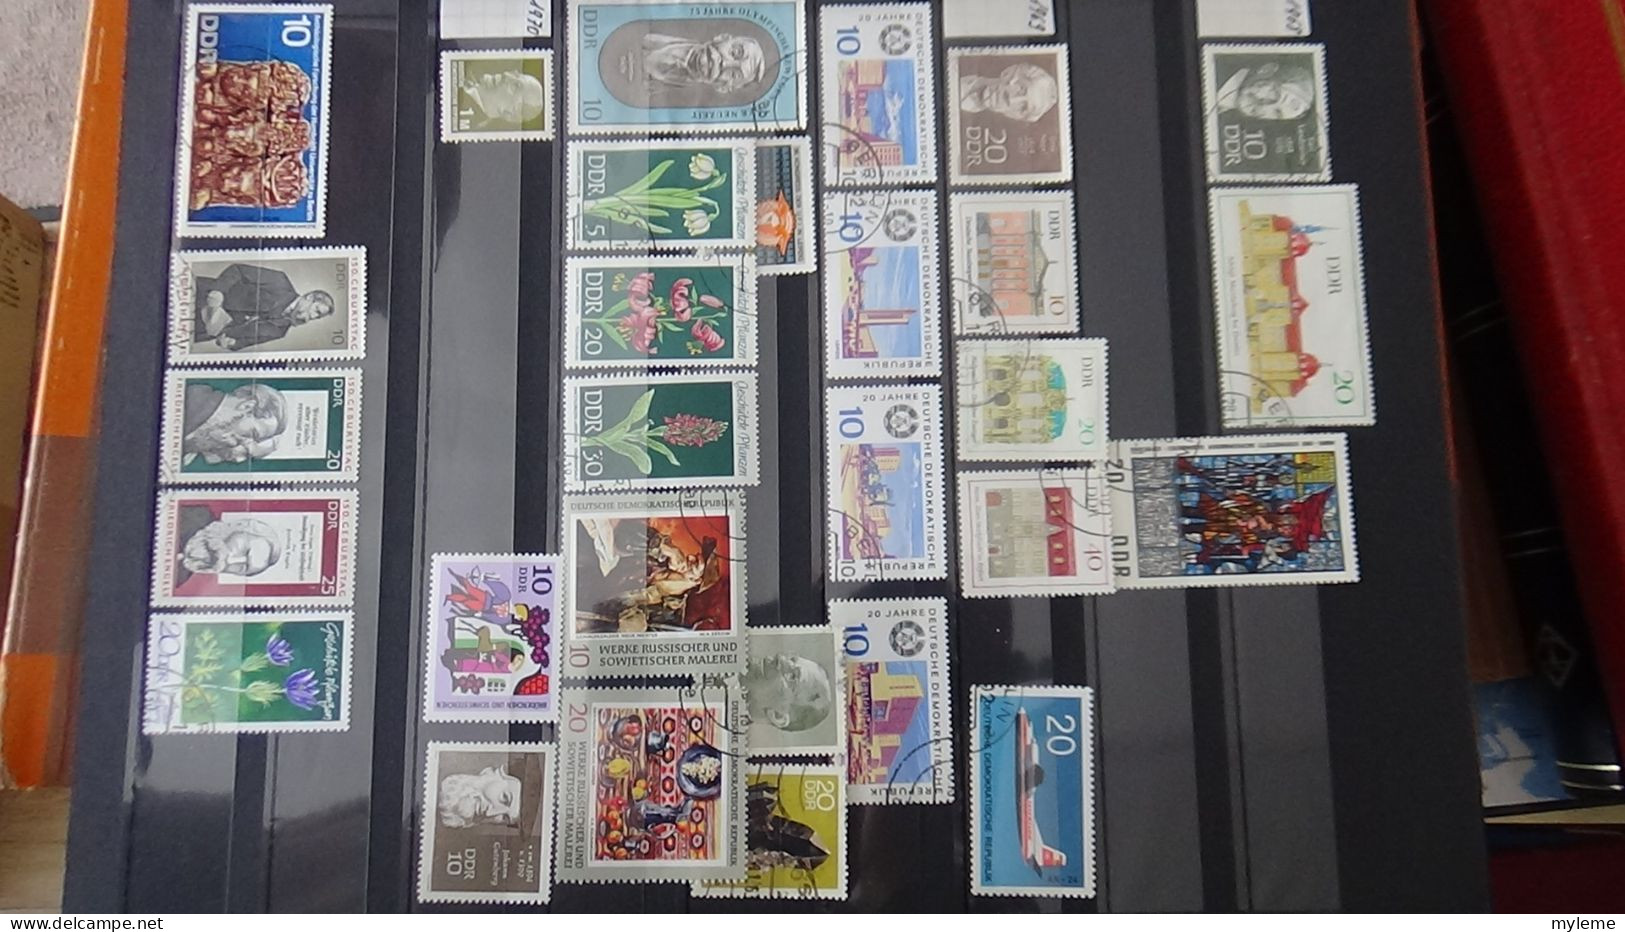 BF38 Ensemble de timbres de divers pays + France N° 262 **  Cote 550 euros